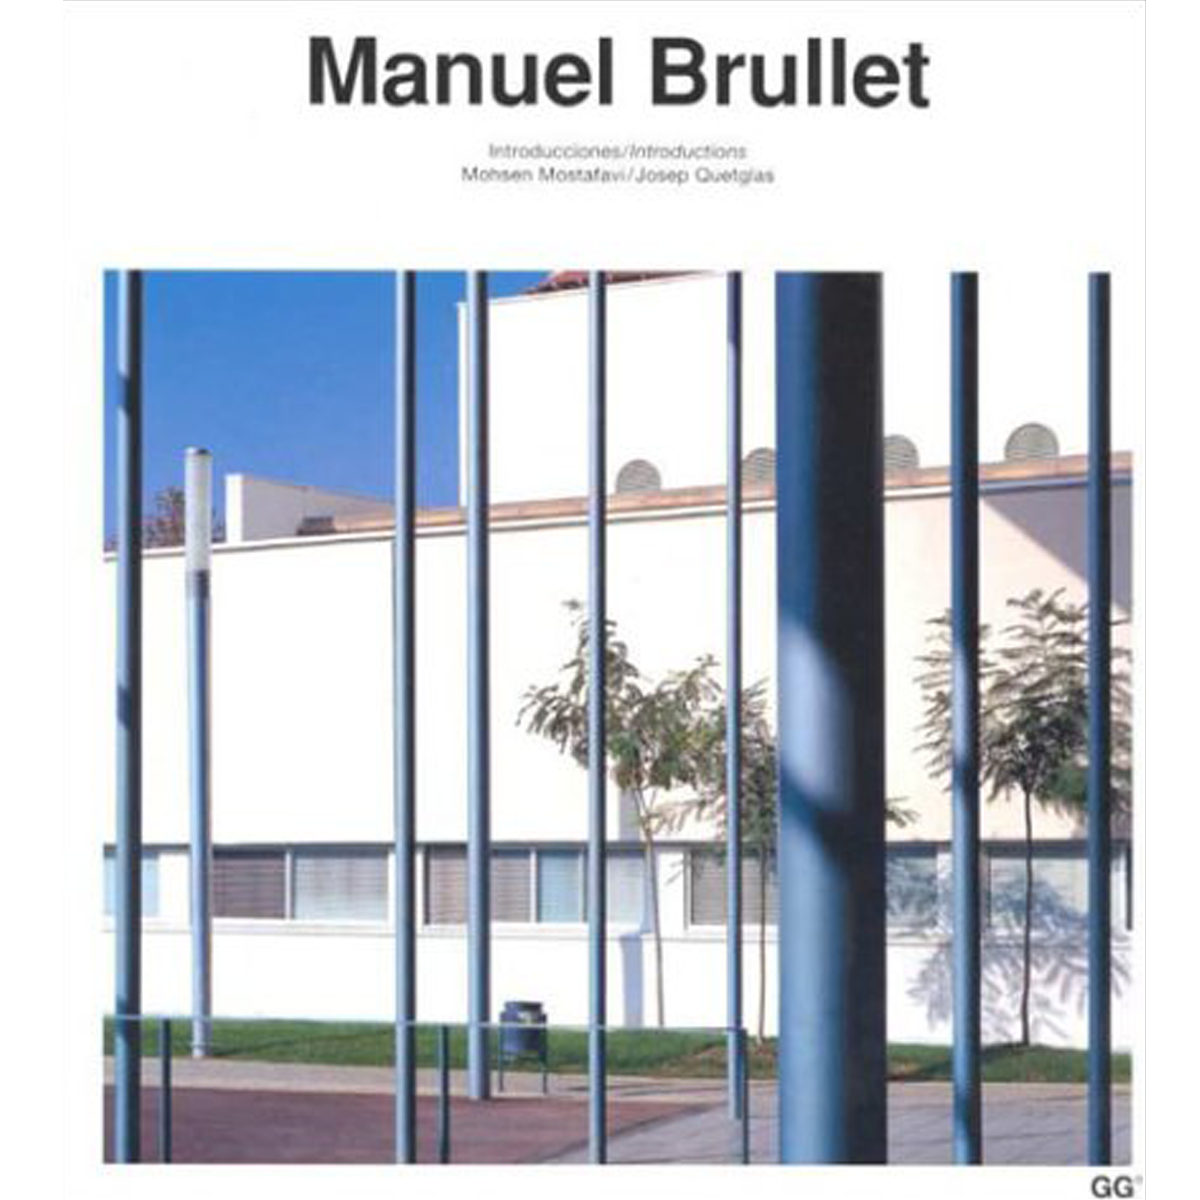 Manuel Brullet